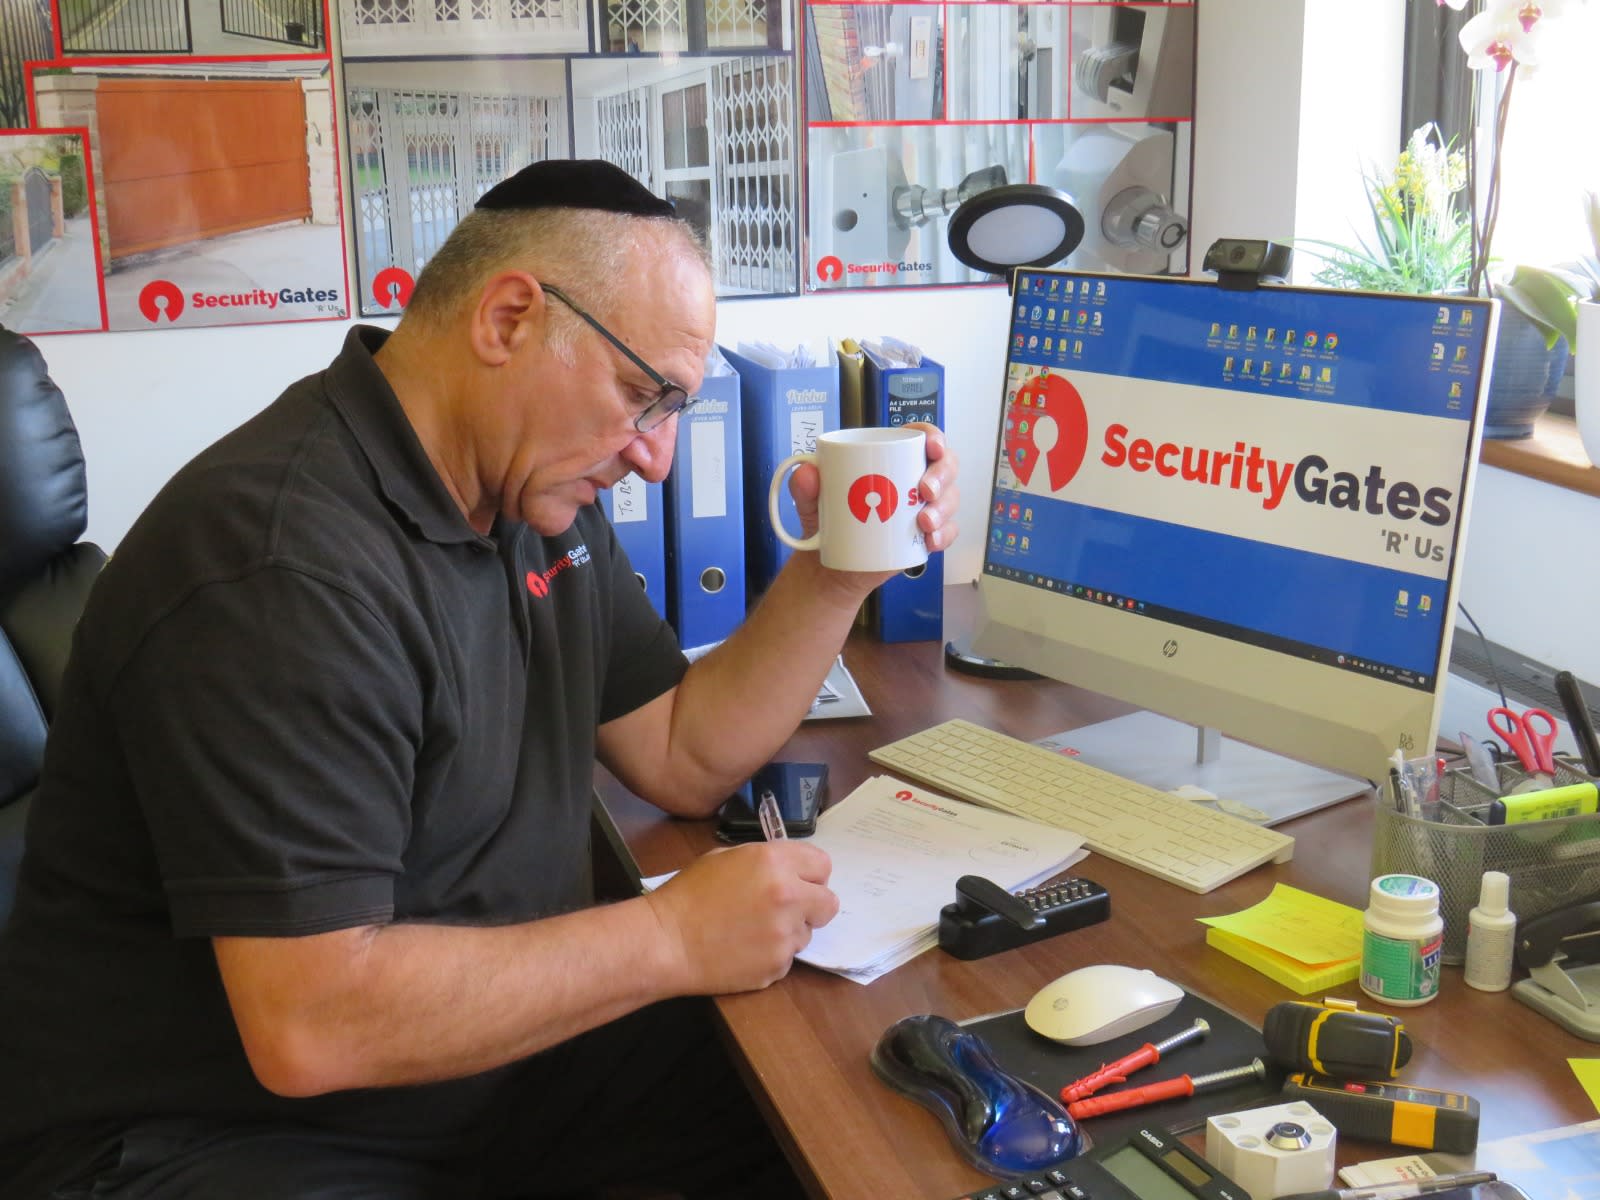 Images Security Gates 'R' Us Ltd